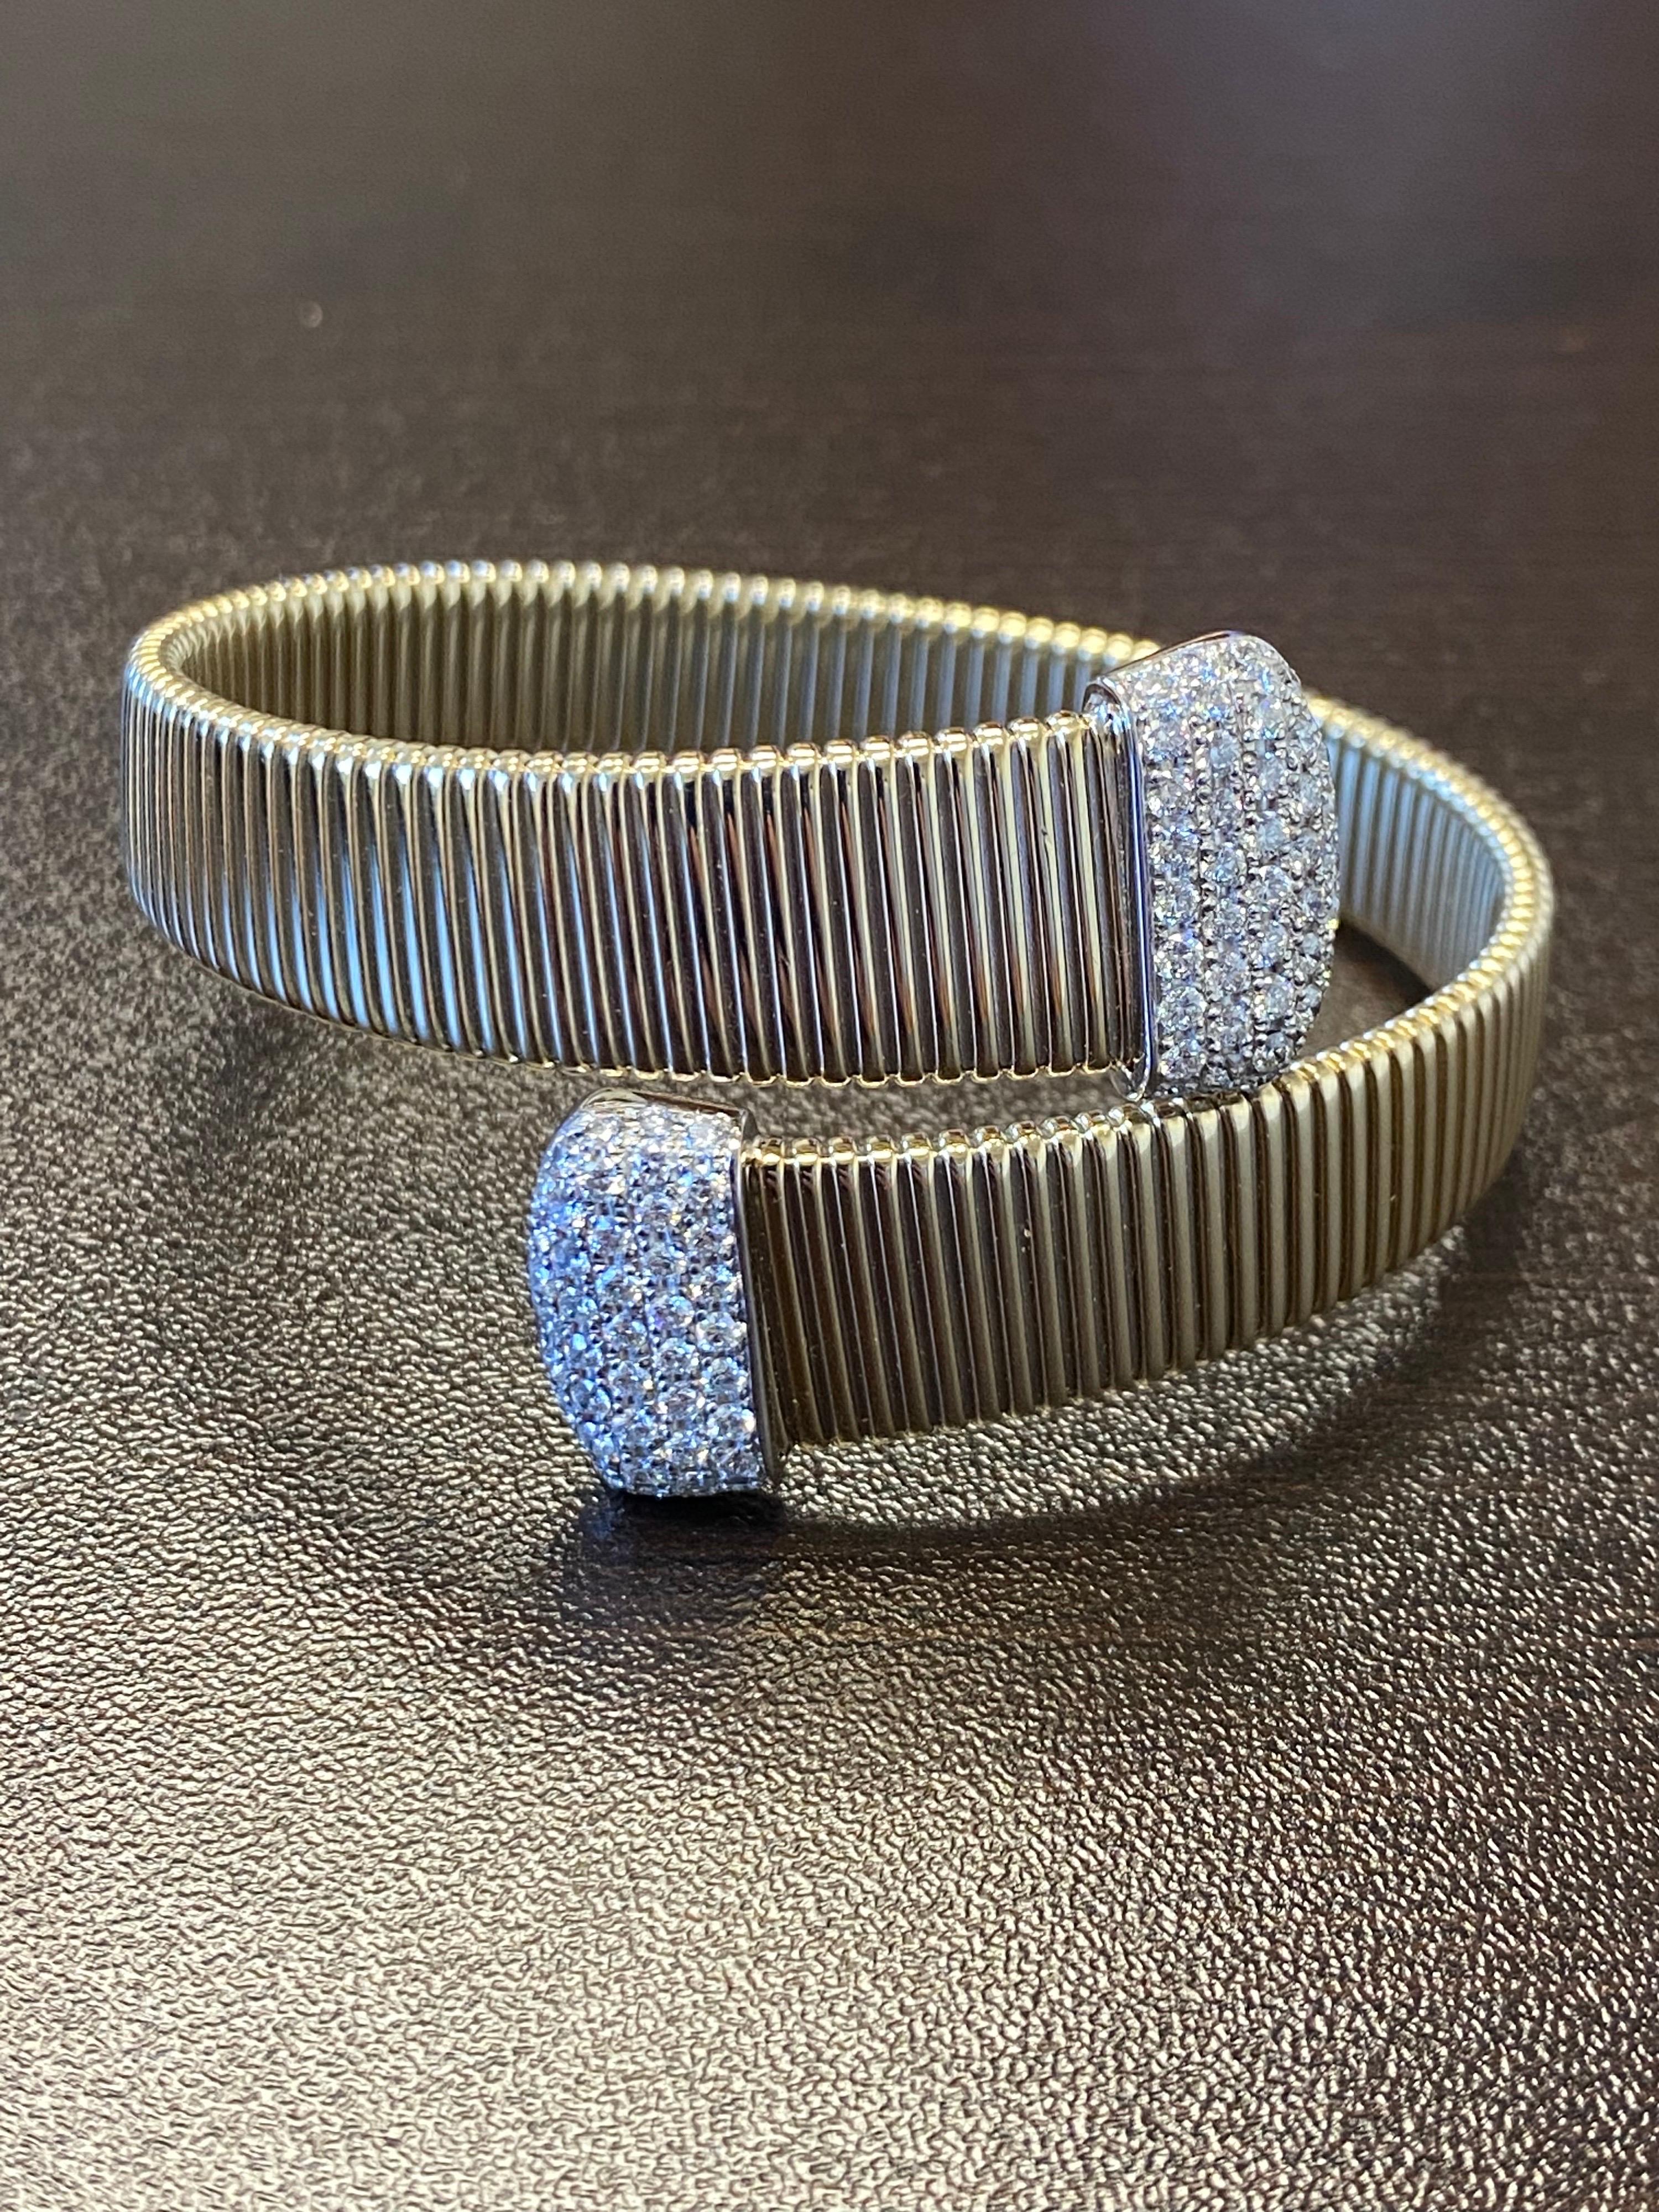 Bracelet Tubogas en or jaune 14K serti de diamants flexibles. Le poids total en carats du bracelet est de 2,14. La couleur des pierres est G-H, la pureté est SI. Le bracelet est disponible en or rose.